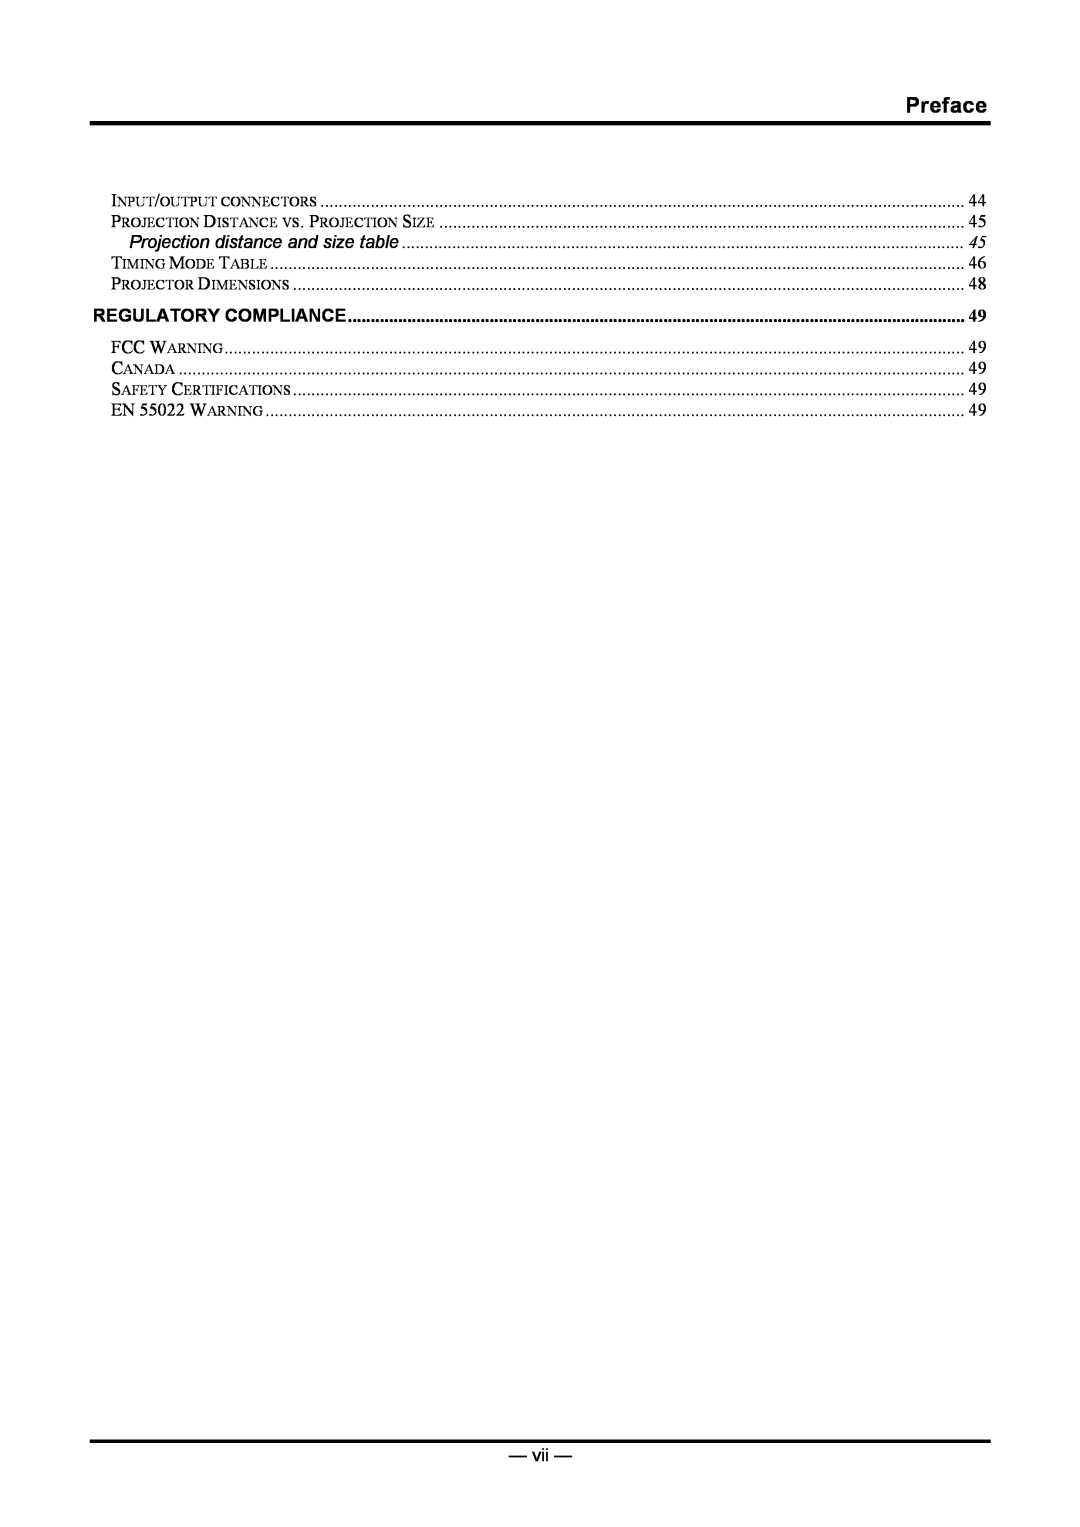 Planar PR5030 manual Preface, Regulatory Compliance 